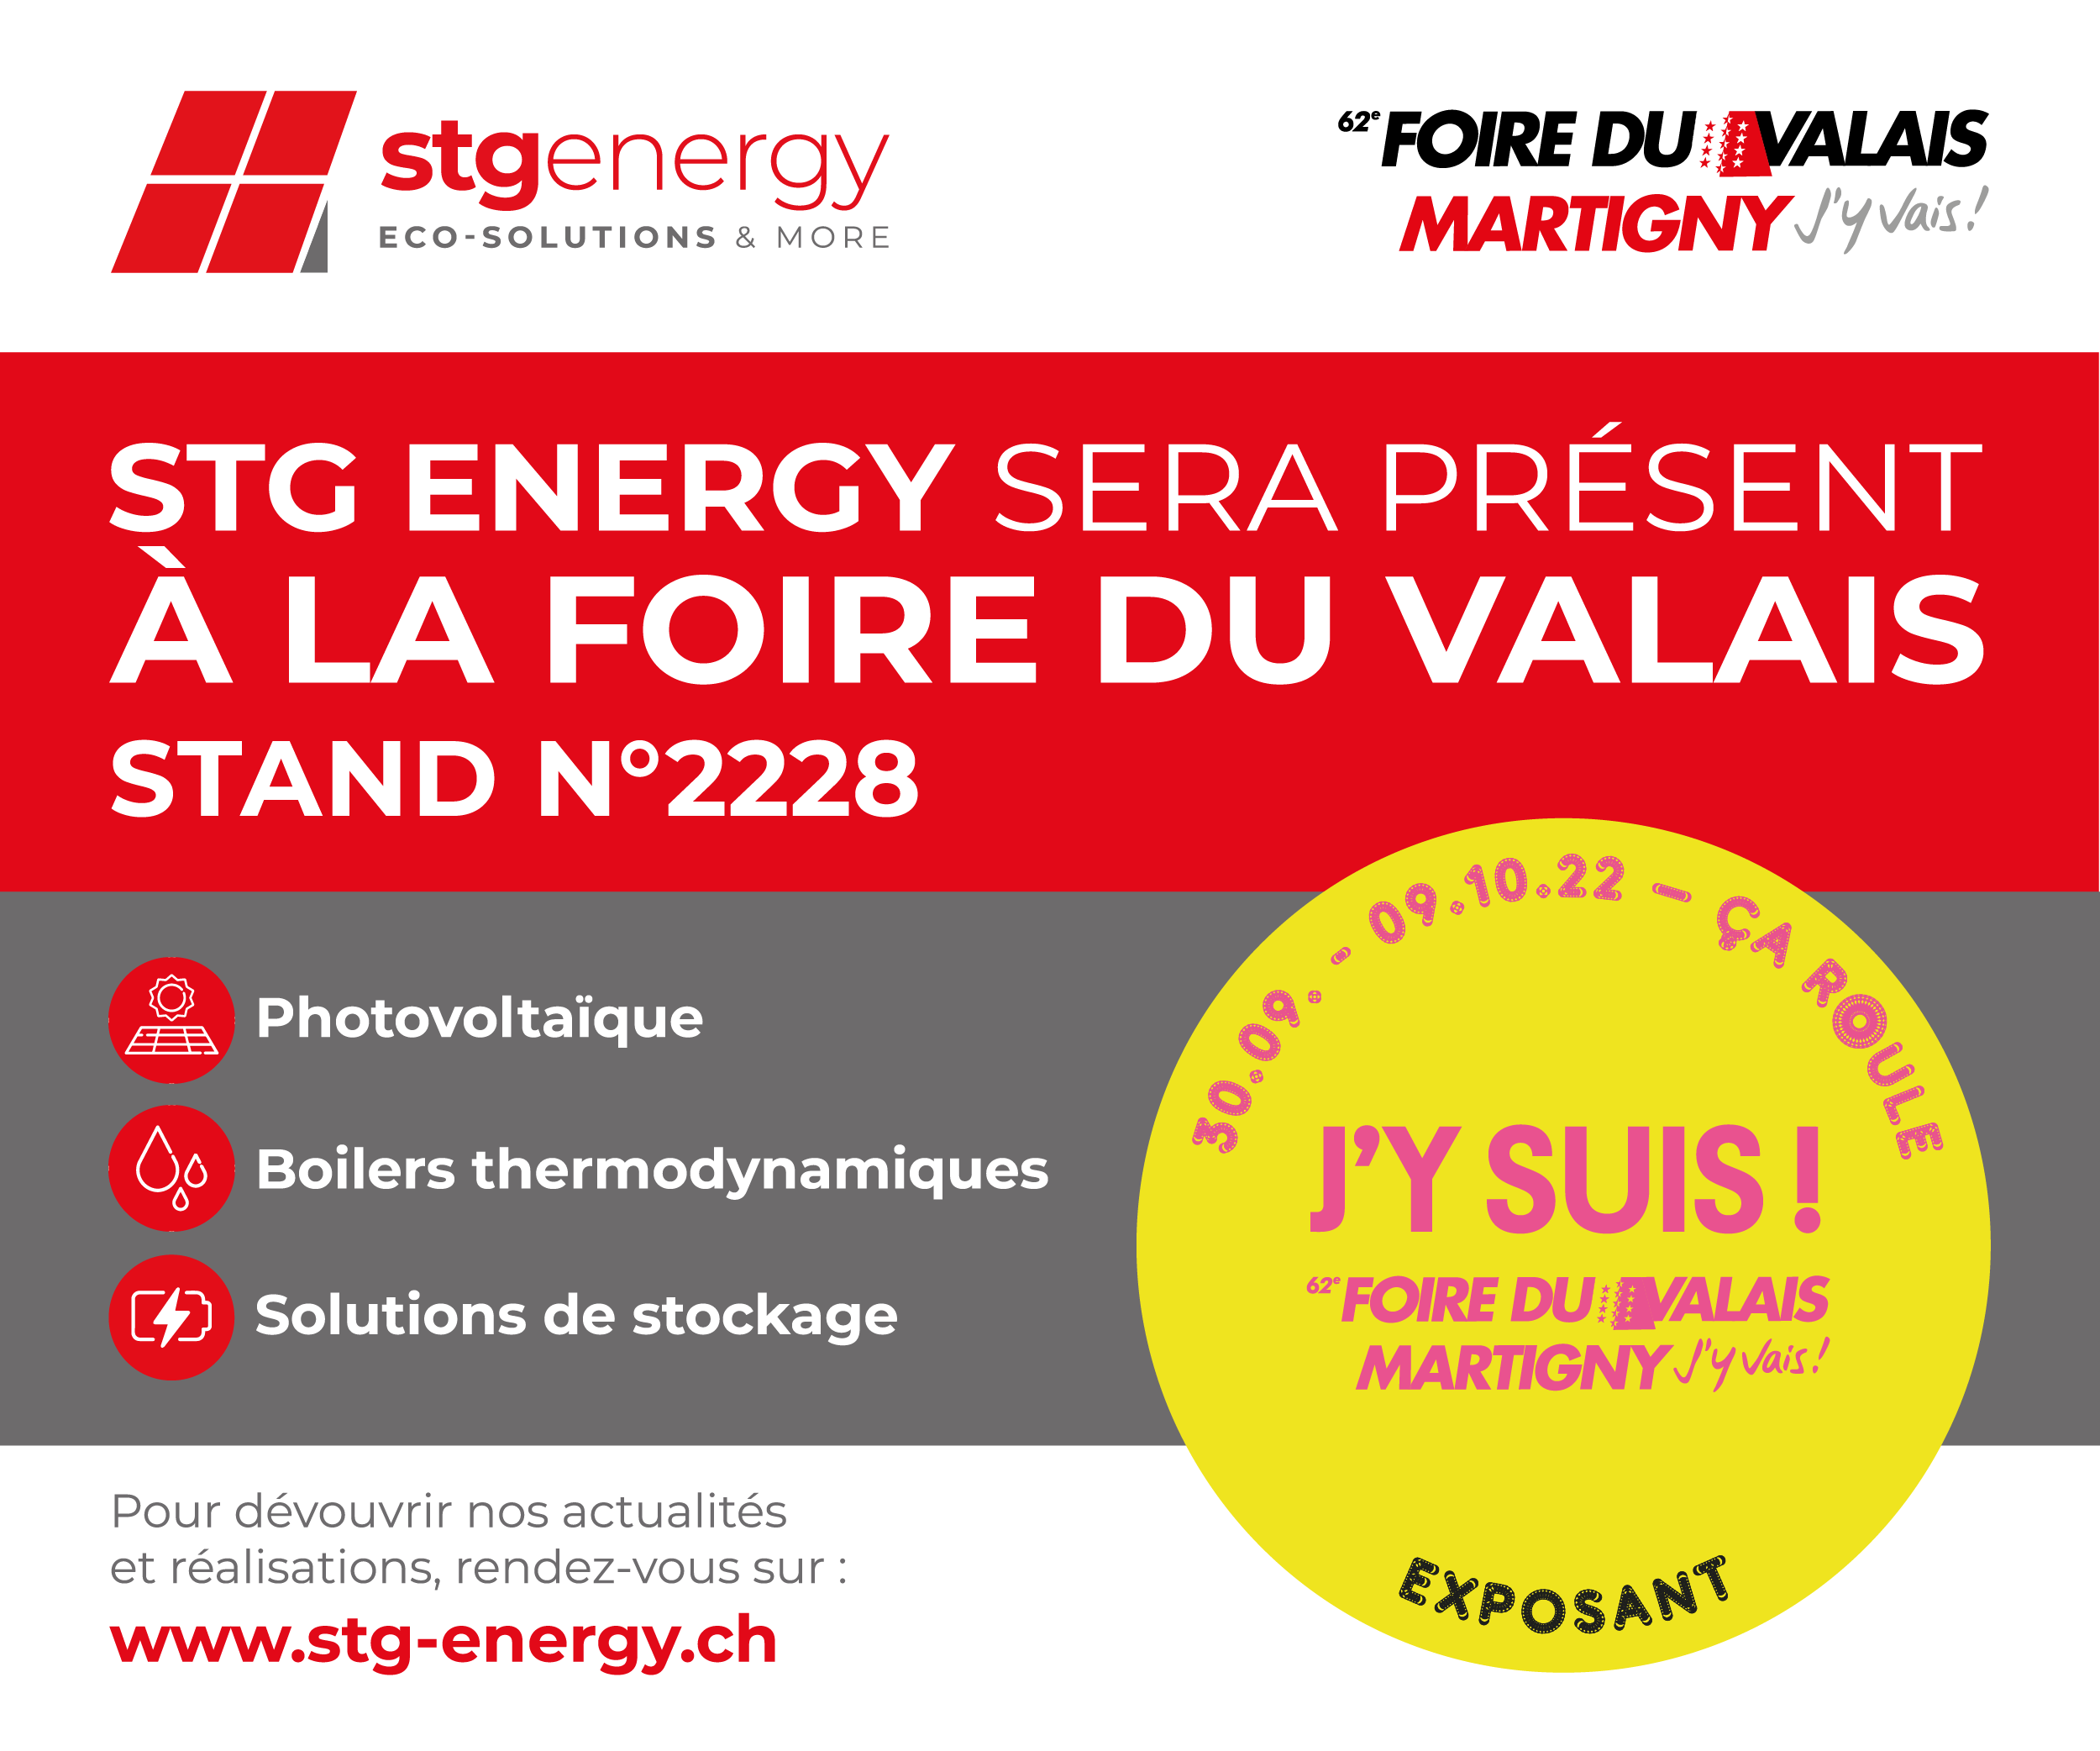 stg-energy-pr-sent-la-foire-du-valais-stgenergy